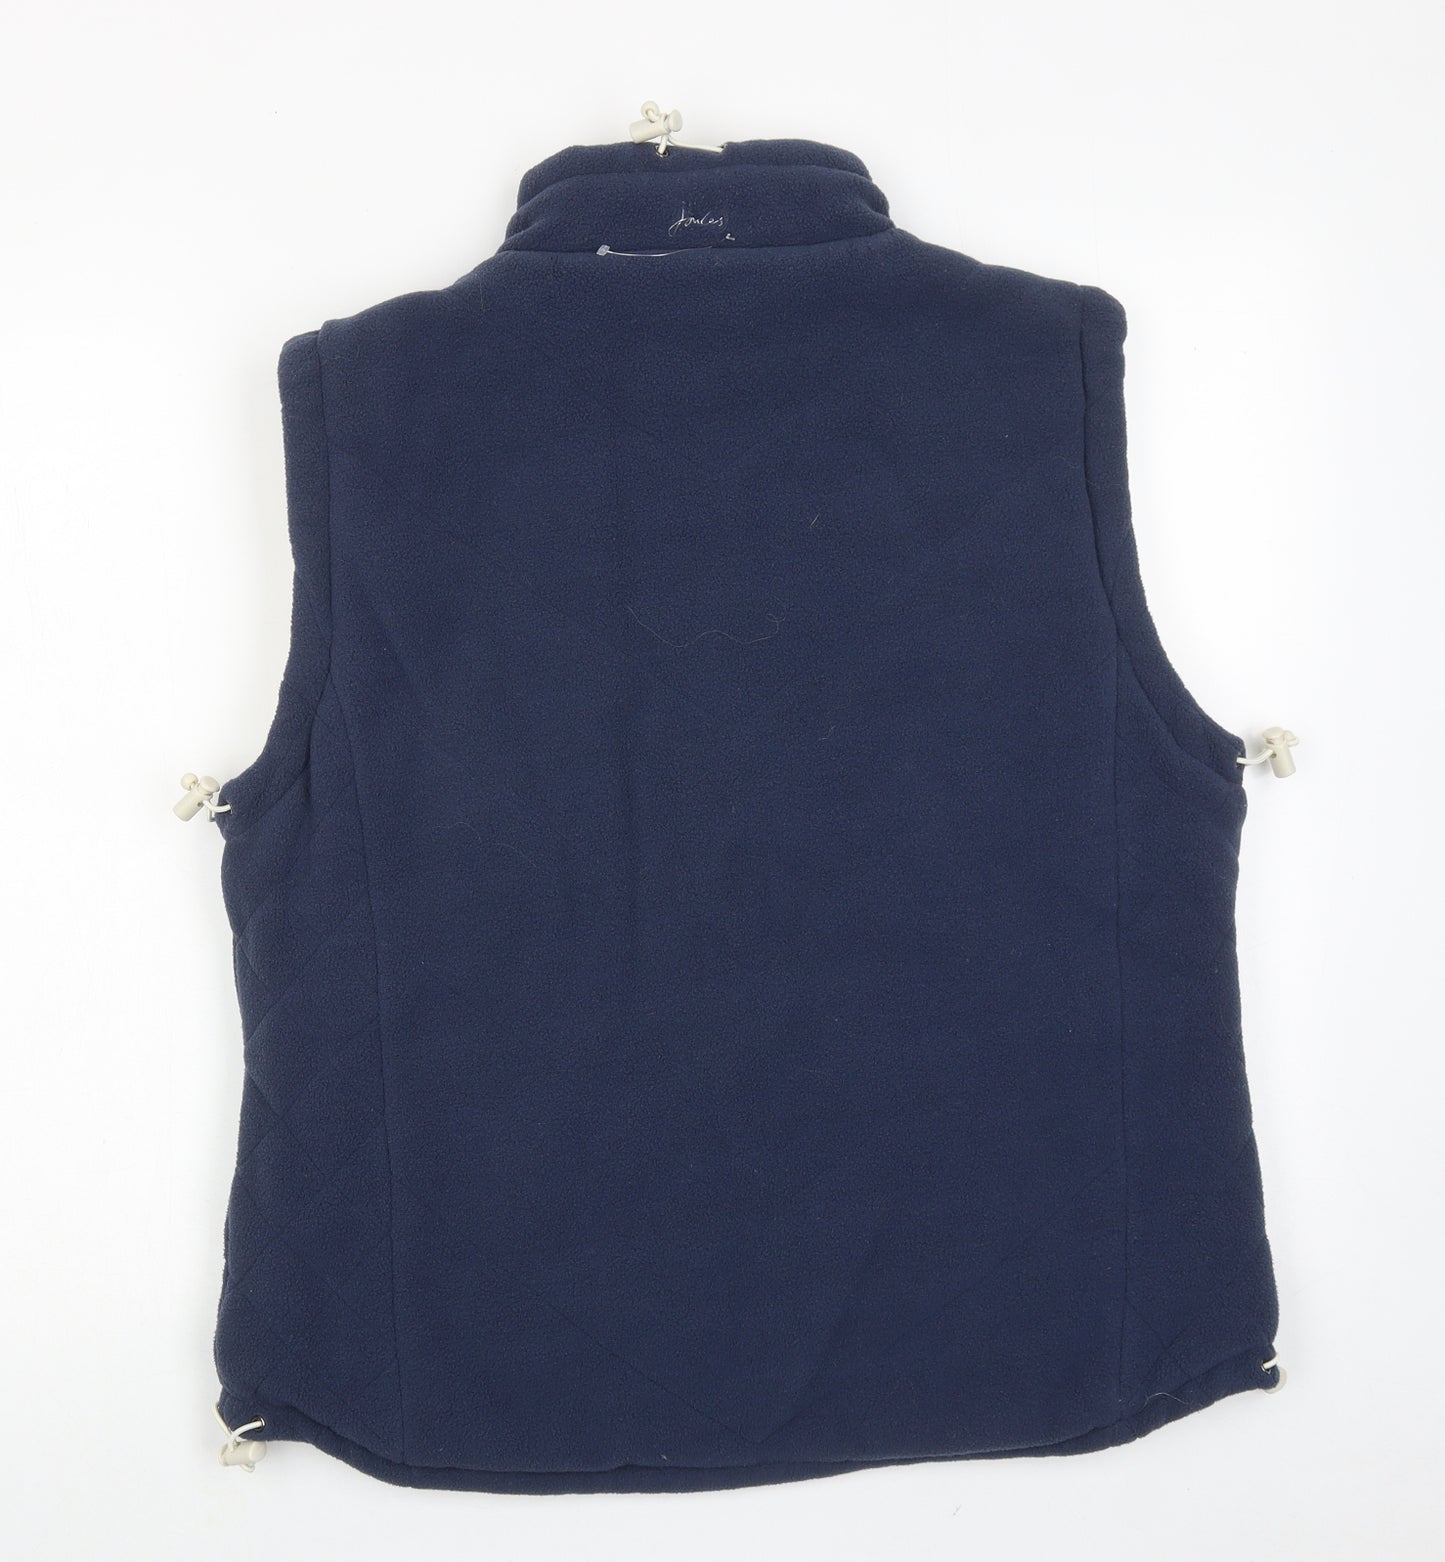 Joules Womens Blue Gilet Jacket Size L Zip